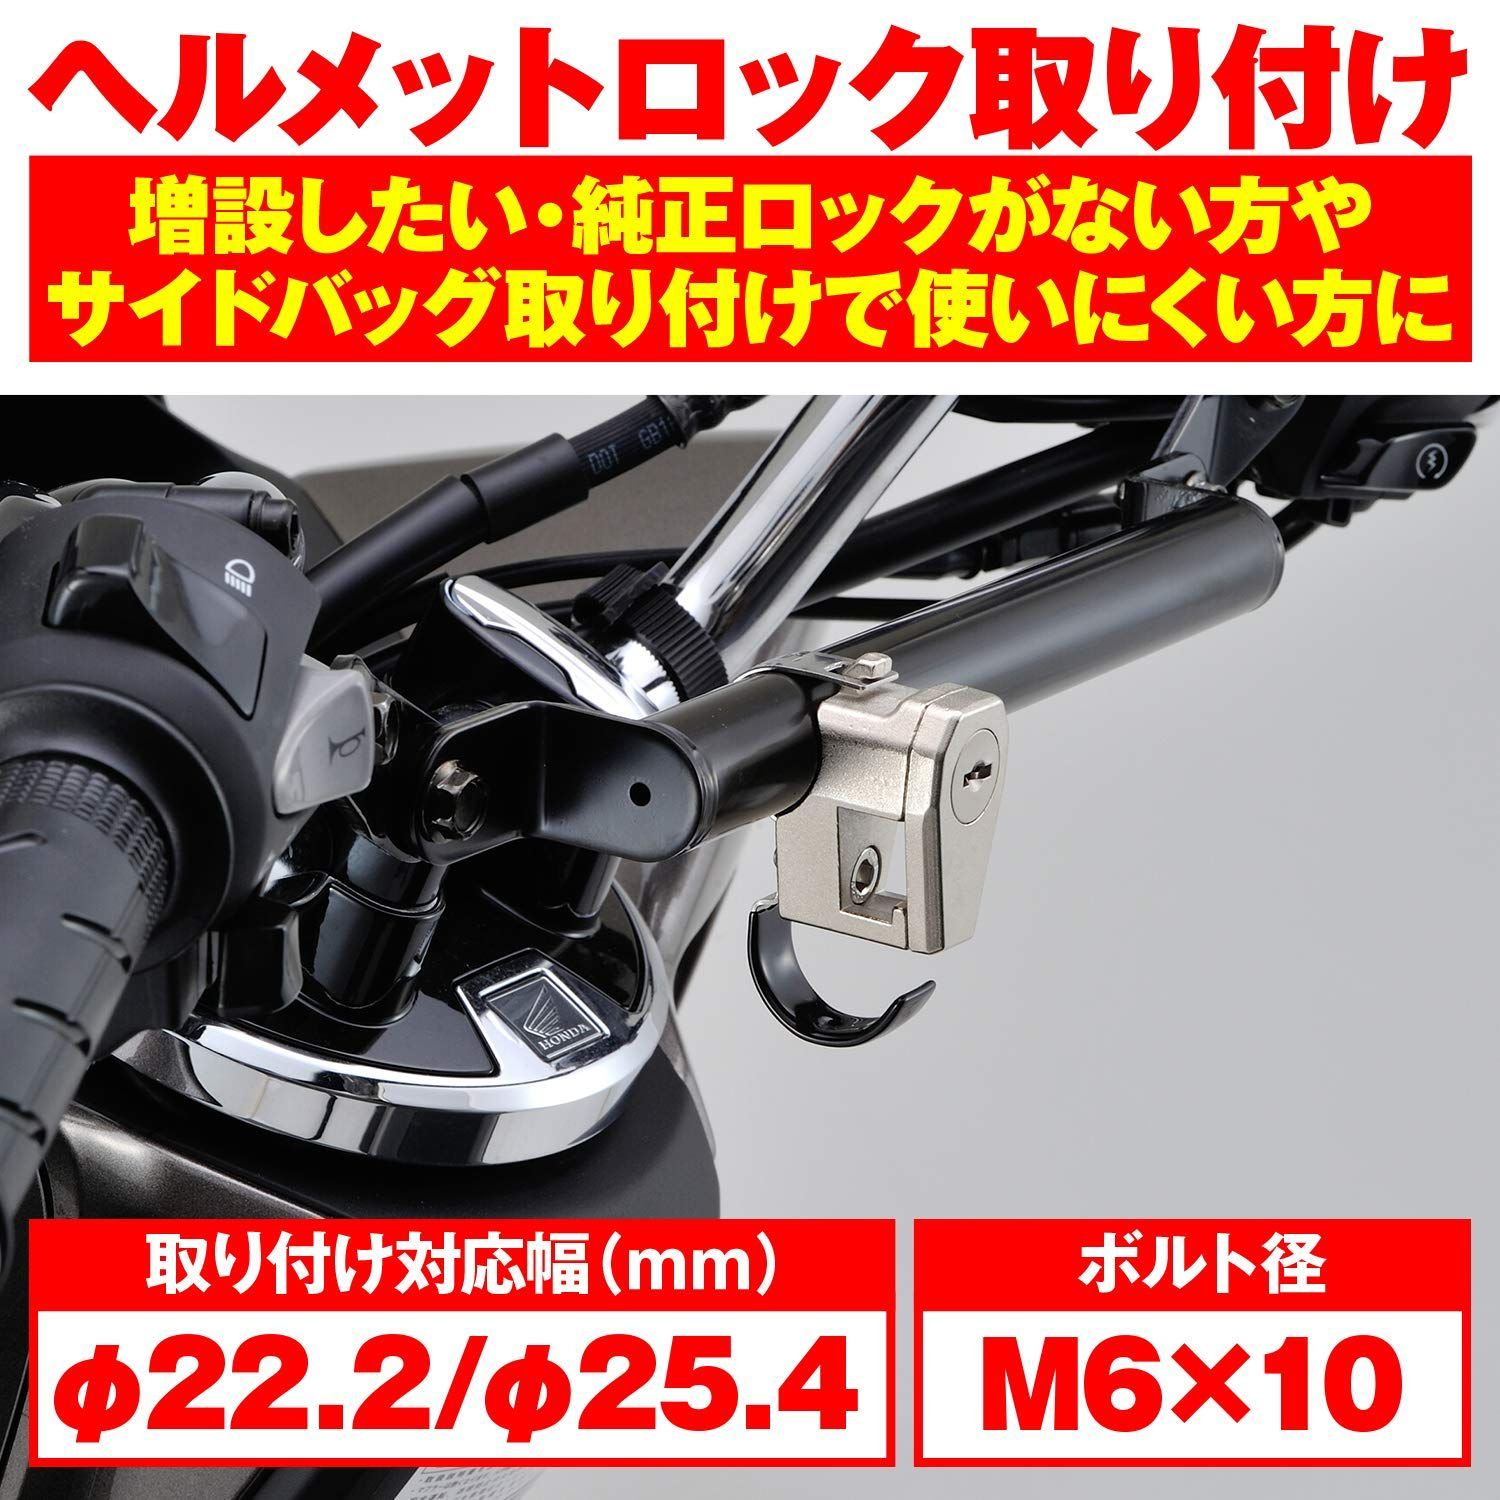 Daytona (デイトナ) ヘルメット X804 PINLOCK クリア 47279 【SALE／96%OFF】 - ヘルメット